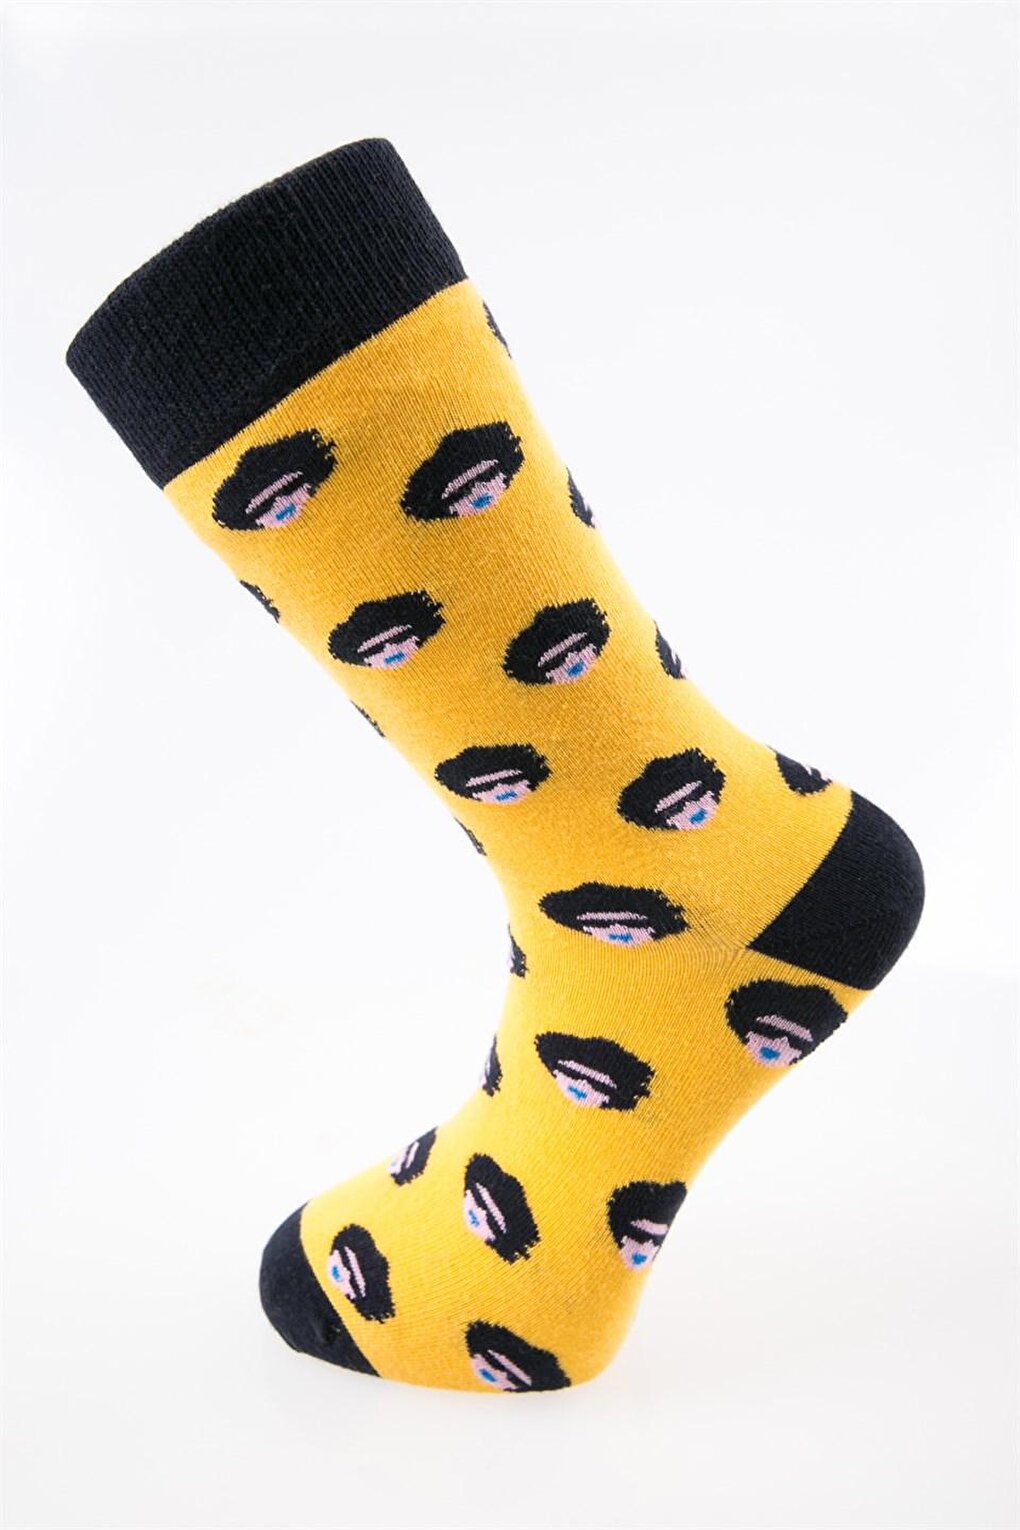 Носки Hipstar Bonus желтого и черного цвета Cozzy Socks inforce ph3x125 желто черный